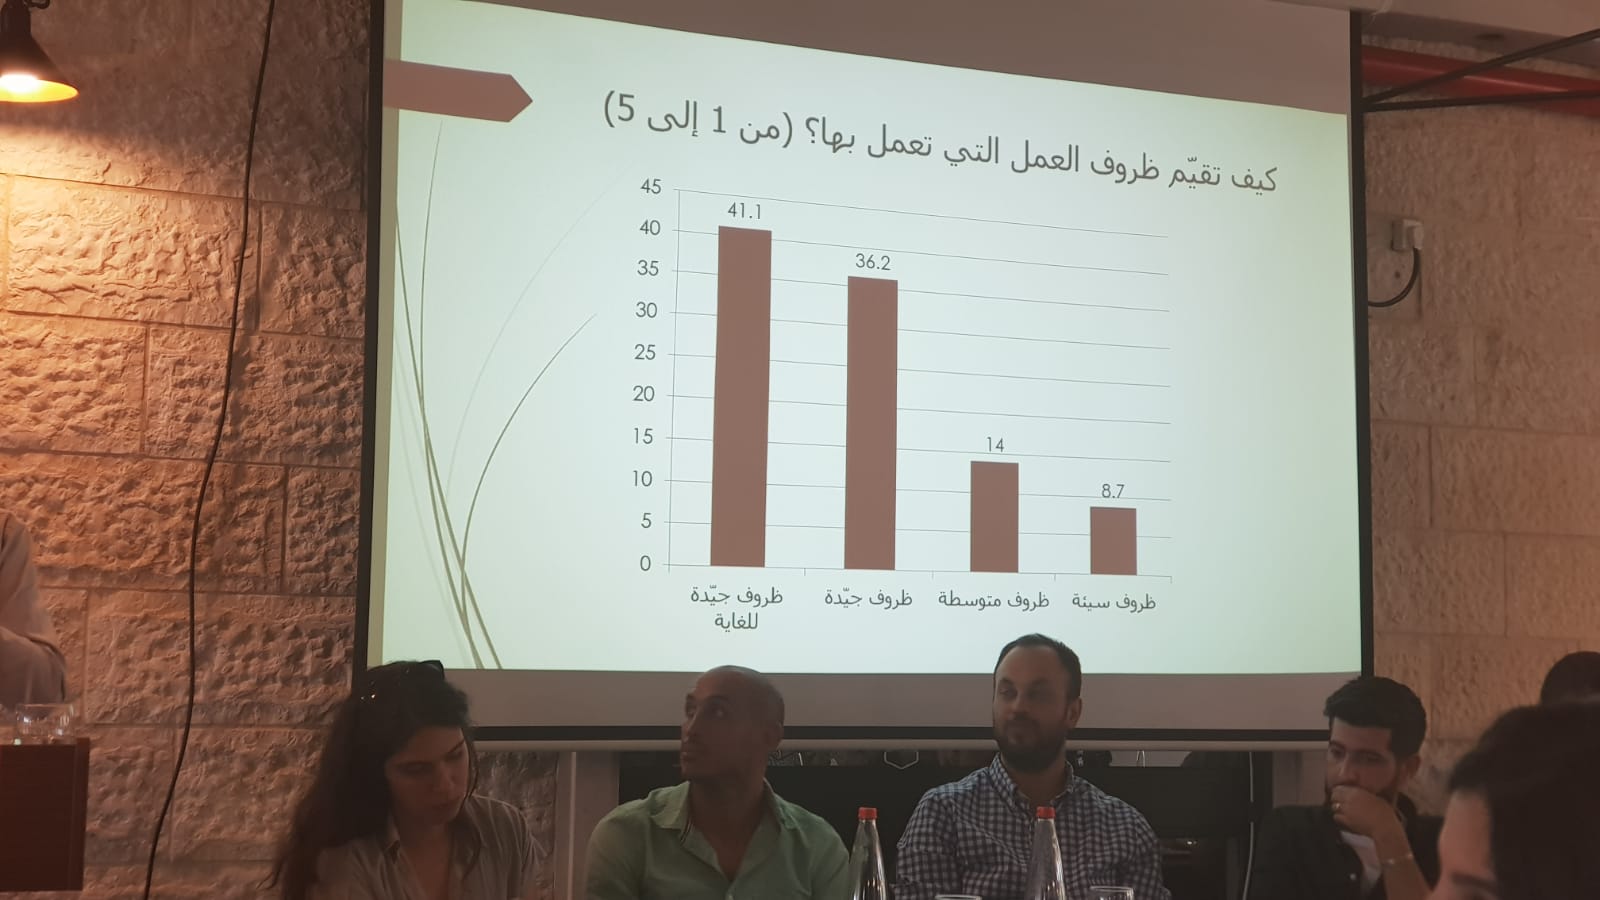 مؤتمر قضايا الشباب: عرض نتائج بحث حول احتياجات وتصورات ومواقف الشباب في الداخل الفلسطيني.